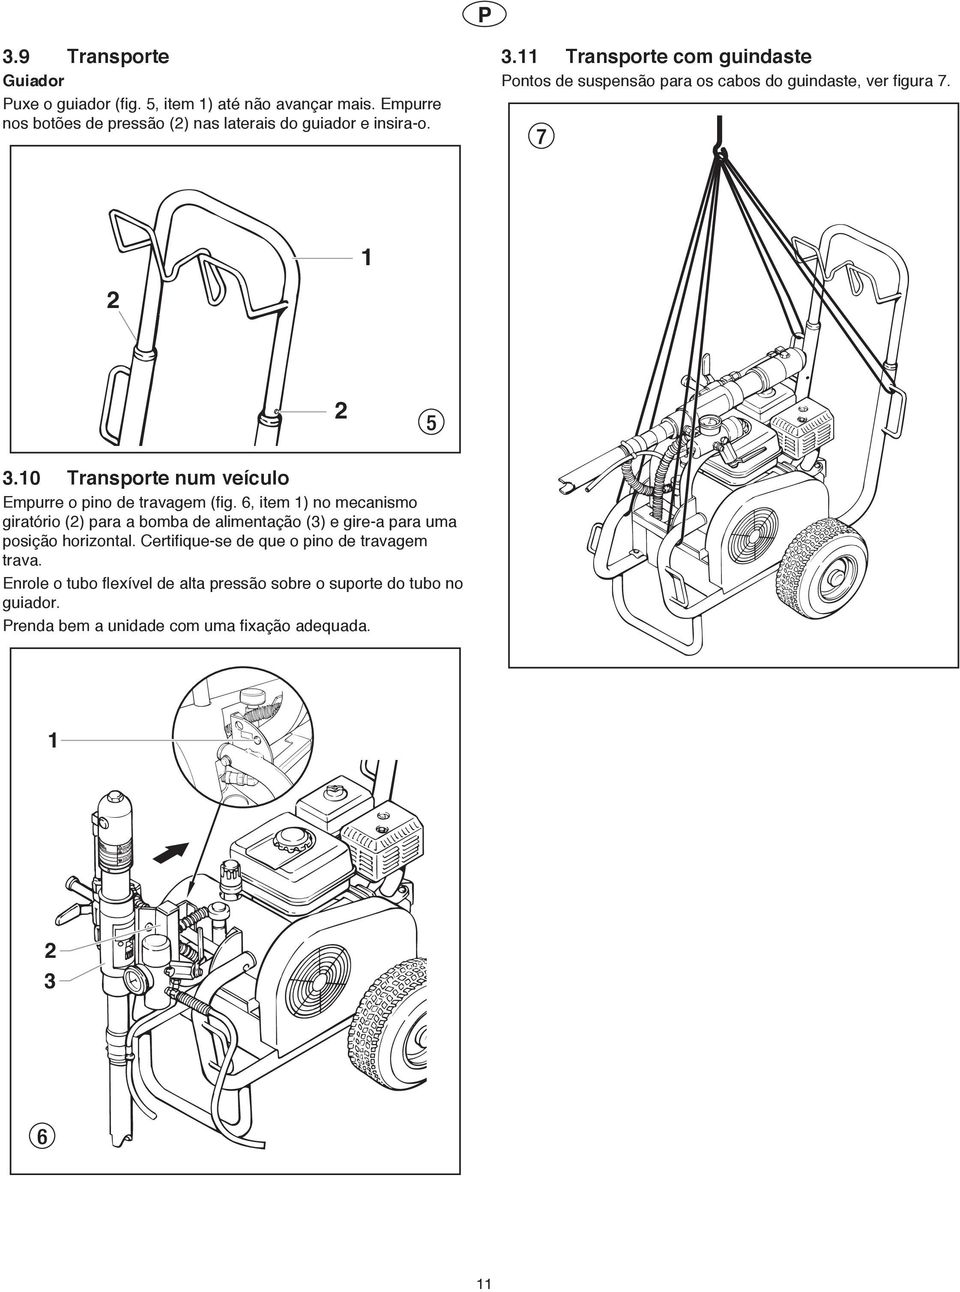 . Transporte com guindaste Pontos de suspensão para os cabos do guindaste, ver figura 7.